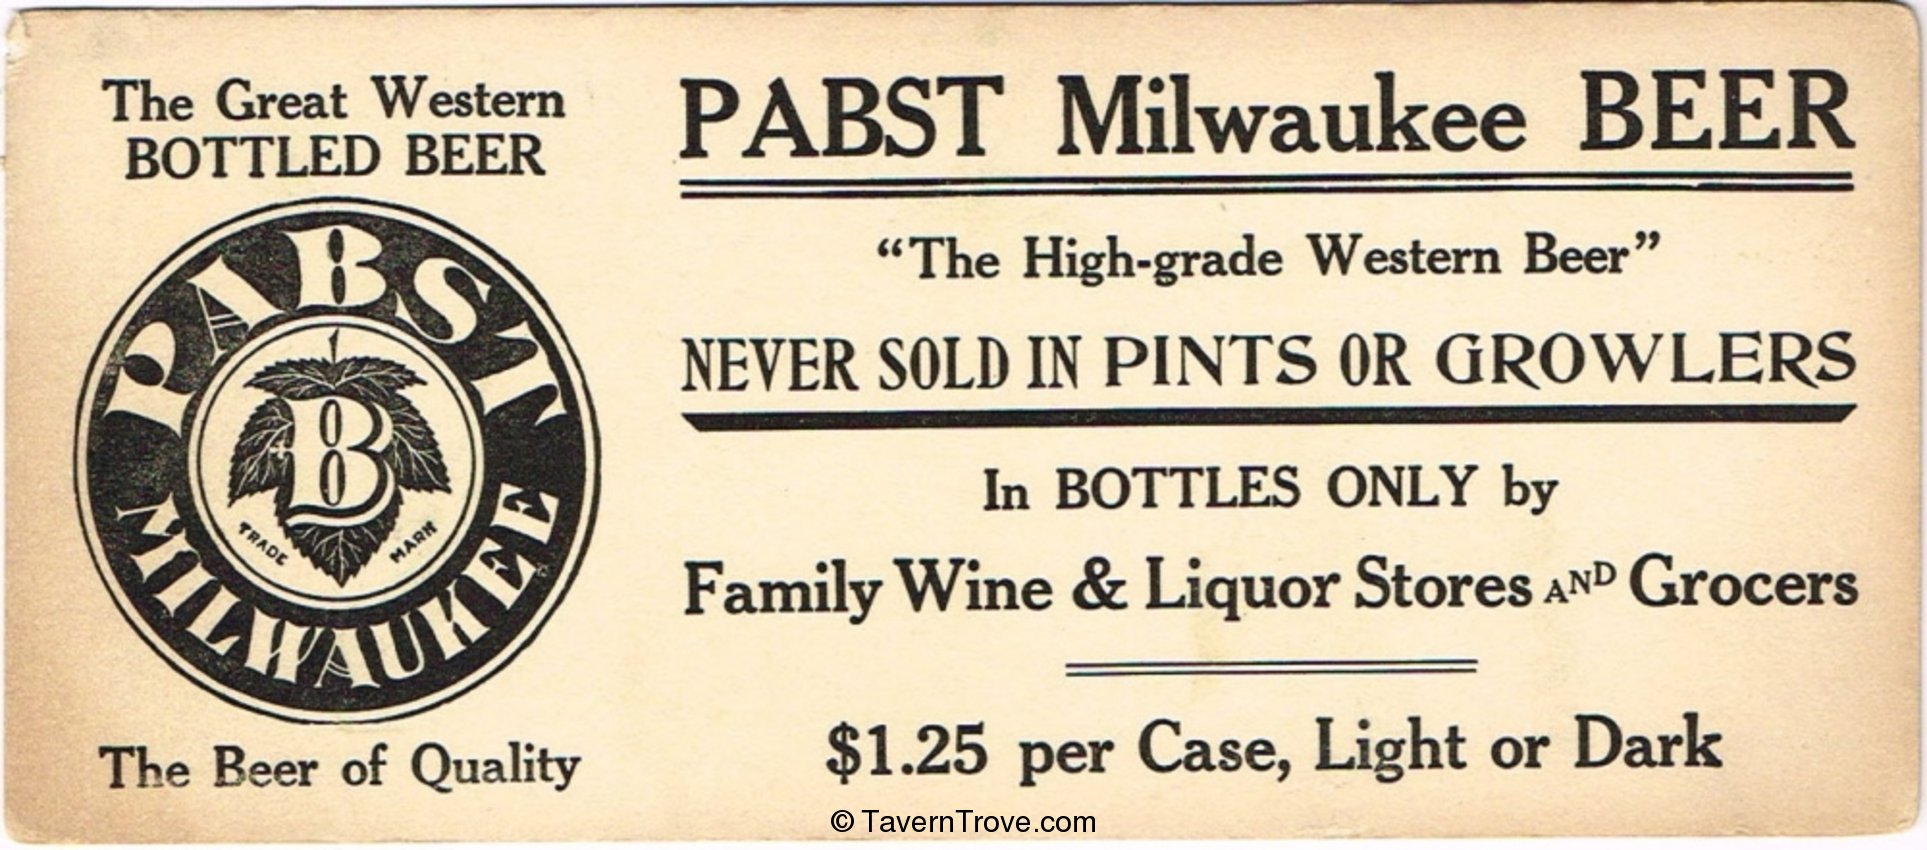 Pabst Milwaukee Beer